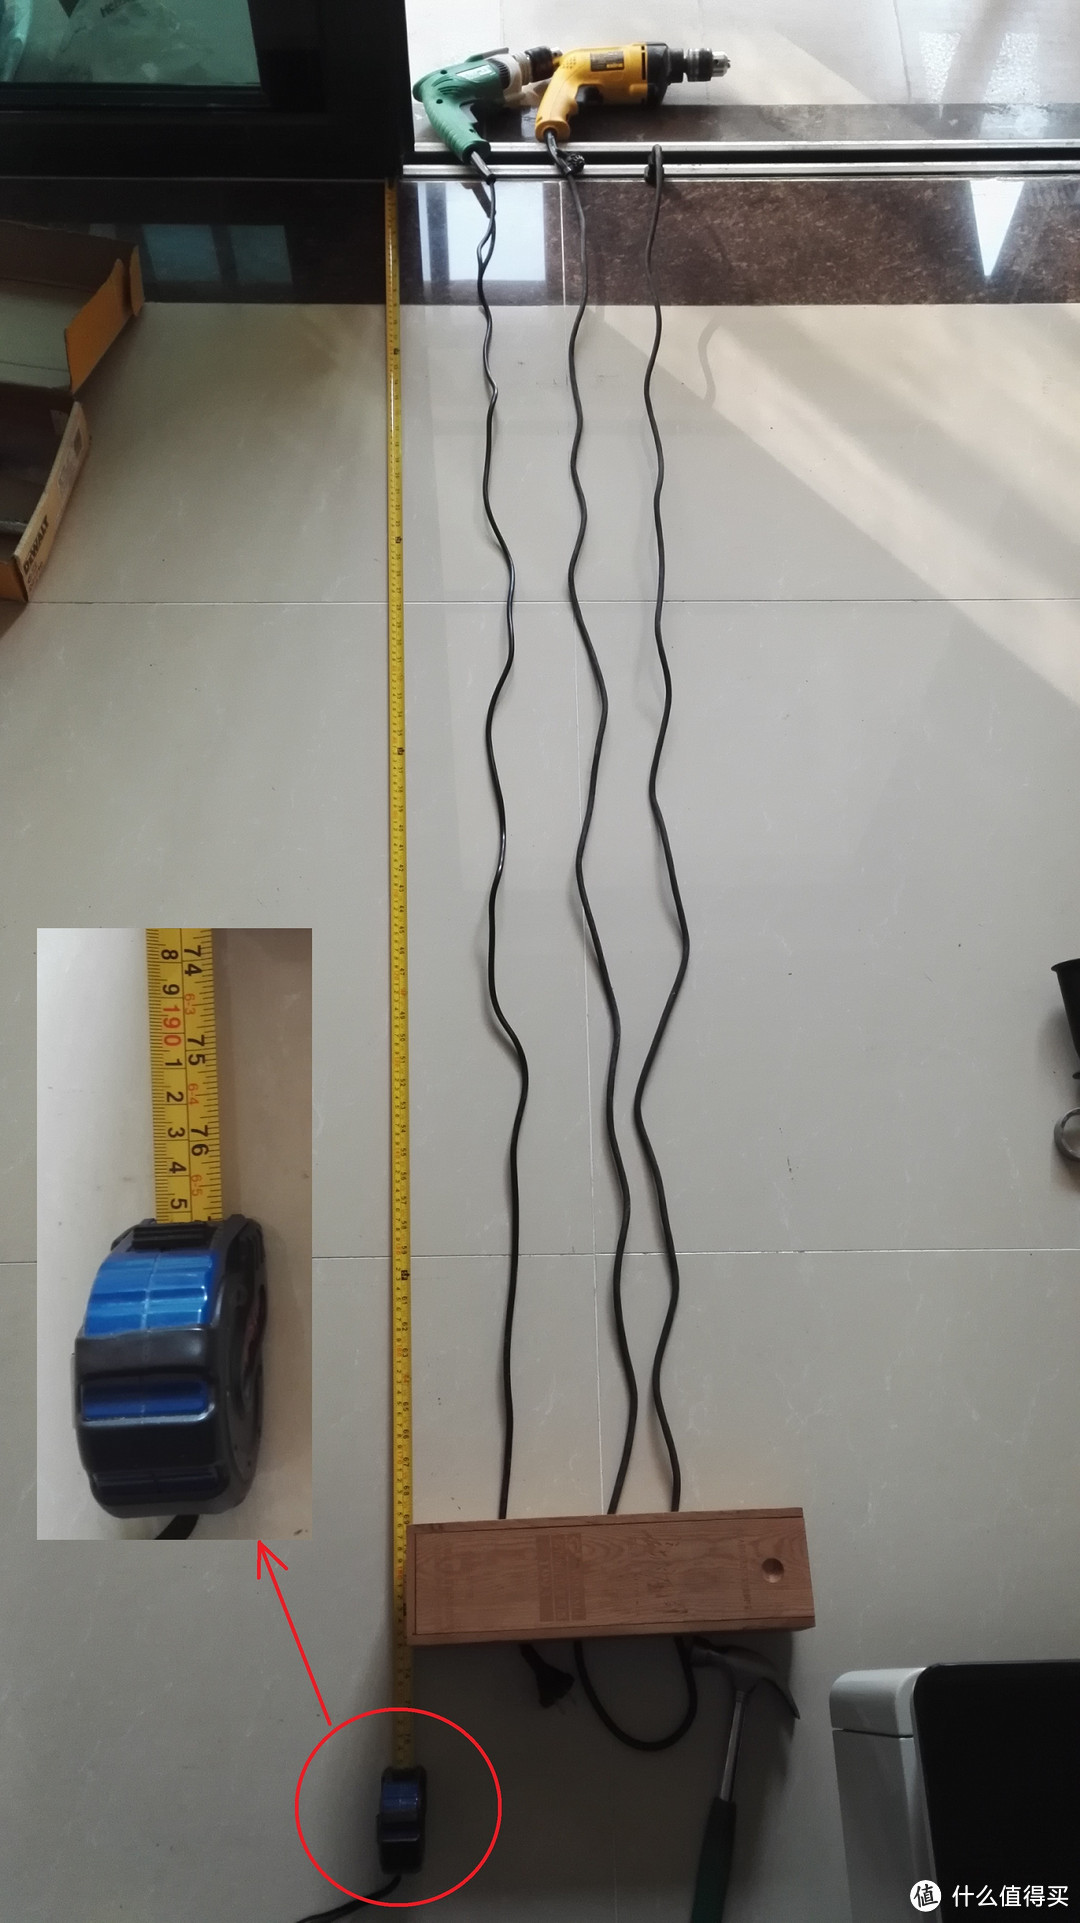 电线差别巨大，德伟电线粗，将近4米；日立电线细，2米不到